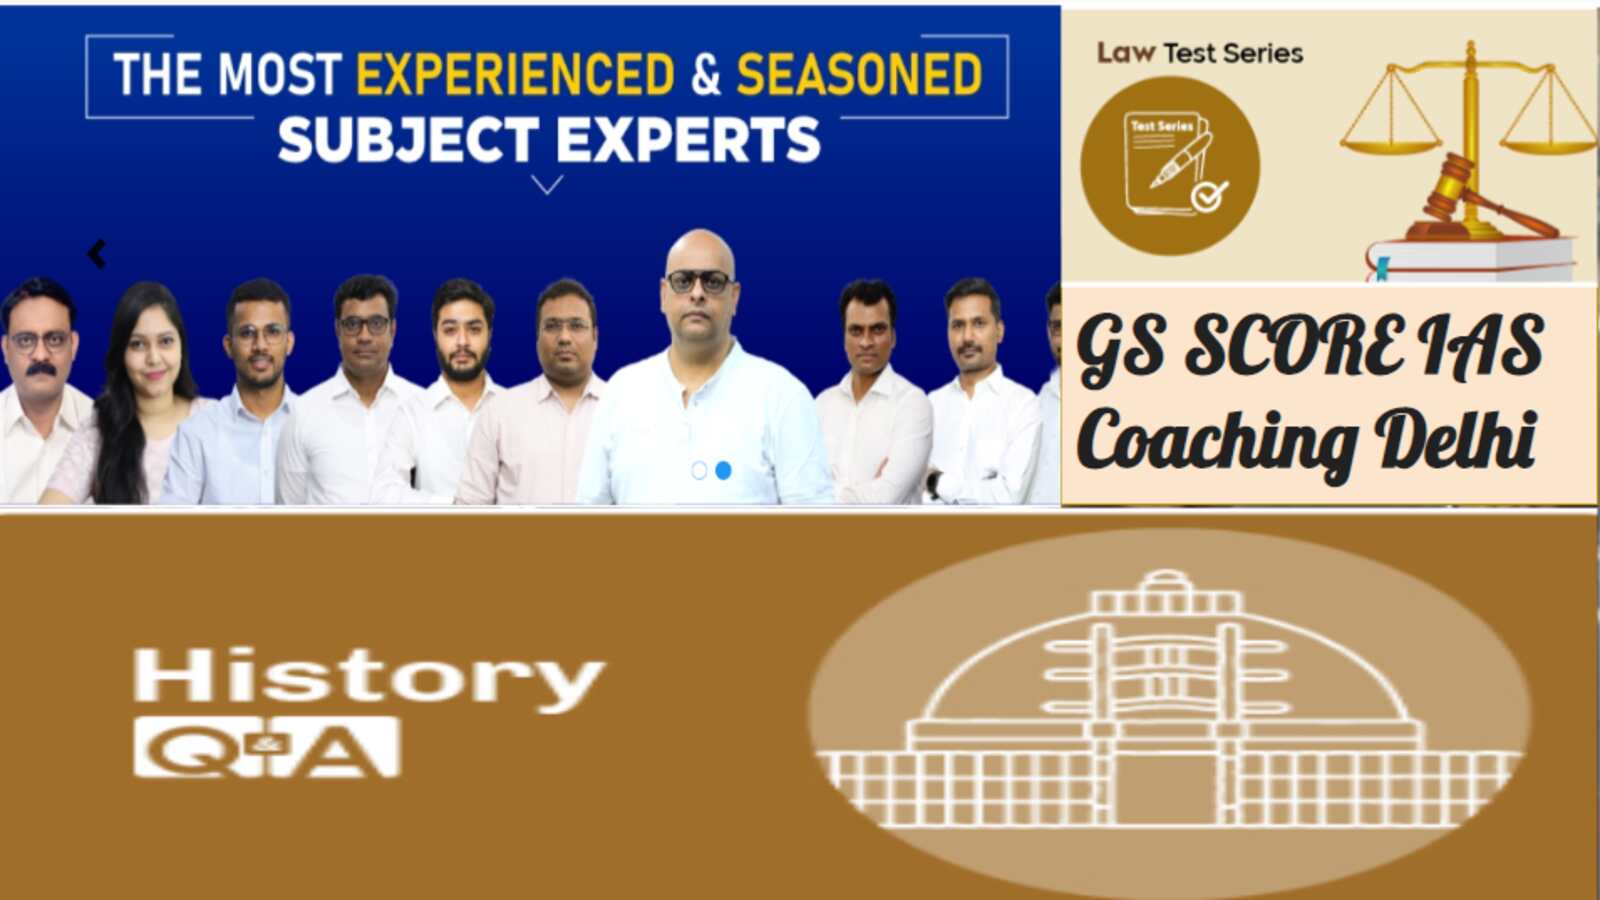 GS SCORE IAS Coaching Delhi